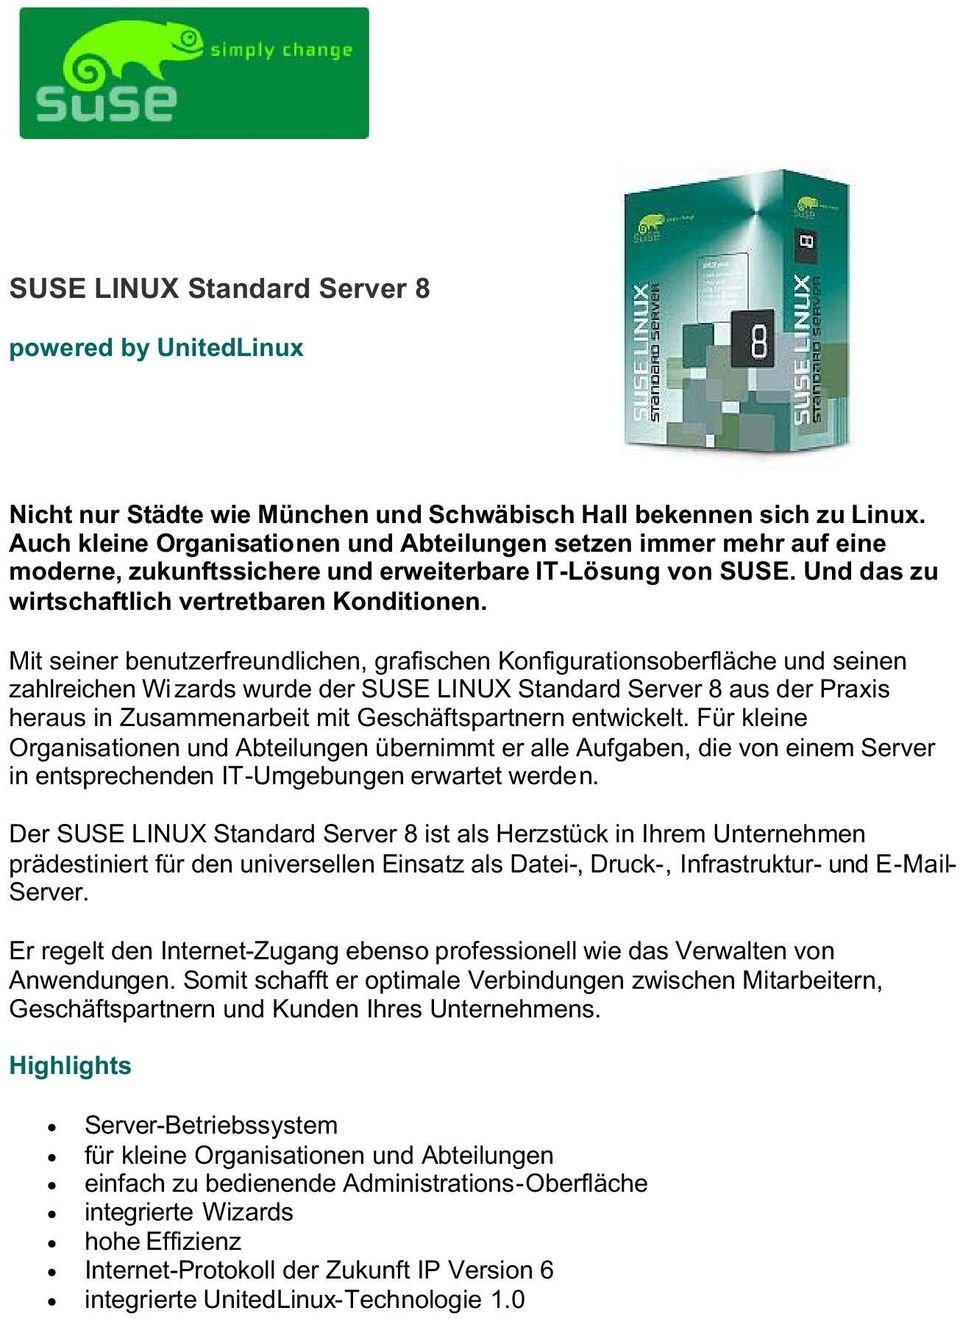 Mit seiner benutzerfreundlichen, grafischen Konfigurationsoberfläche und seinen zahlreichen Wizards wurde der SUSE LINUX Standard Server 8 aus der Praxis heraus in Zusammenarbeit mit